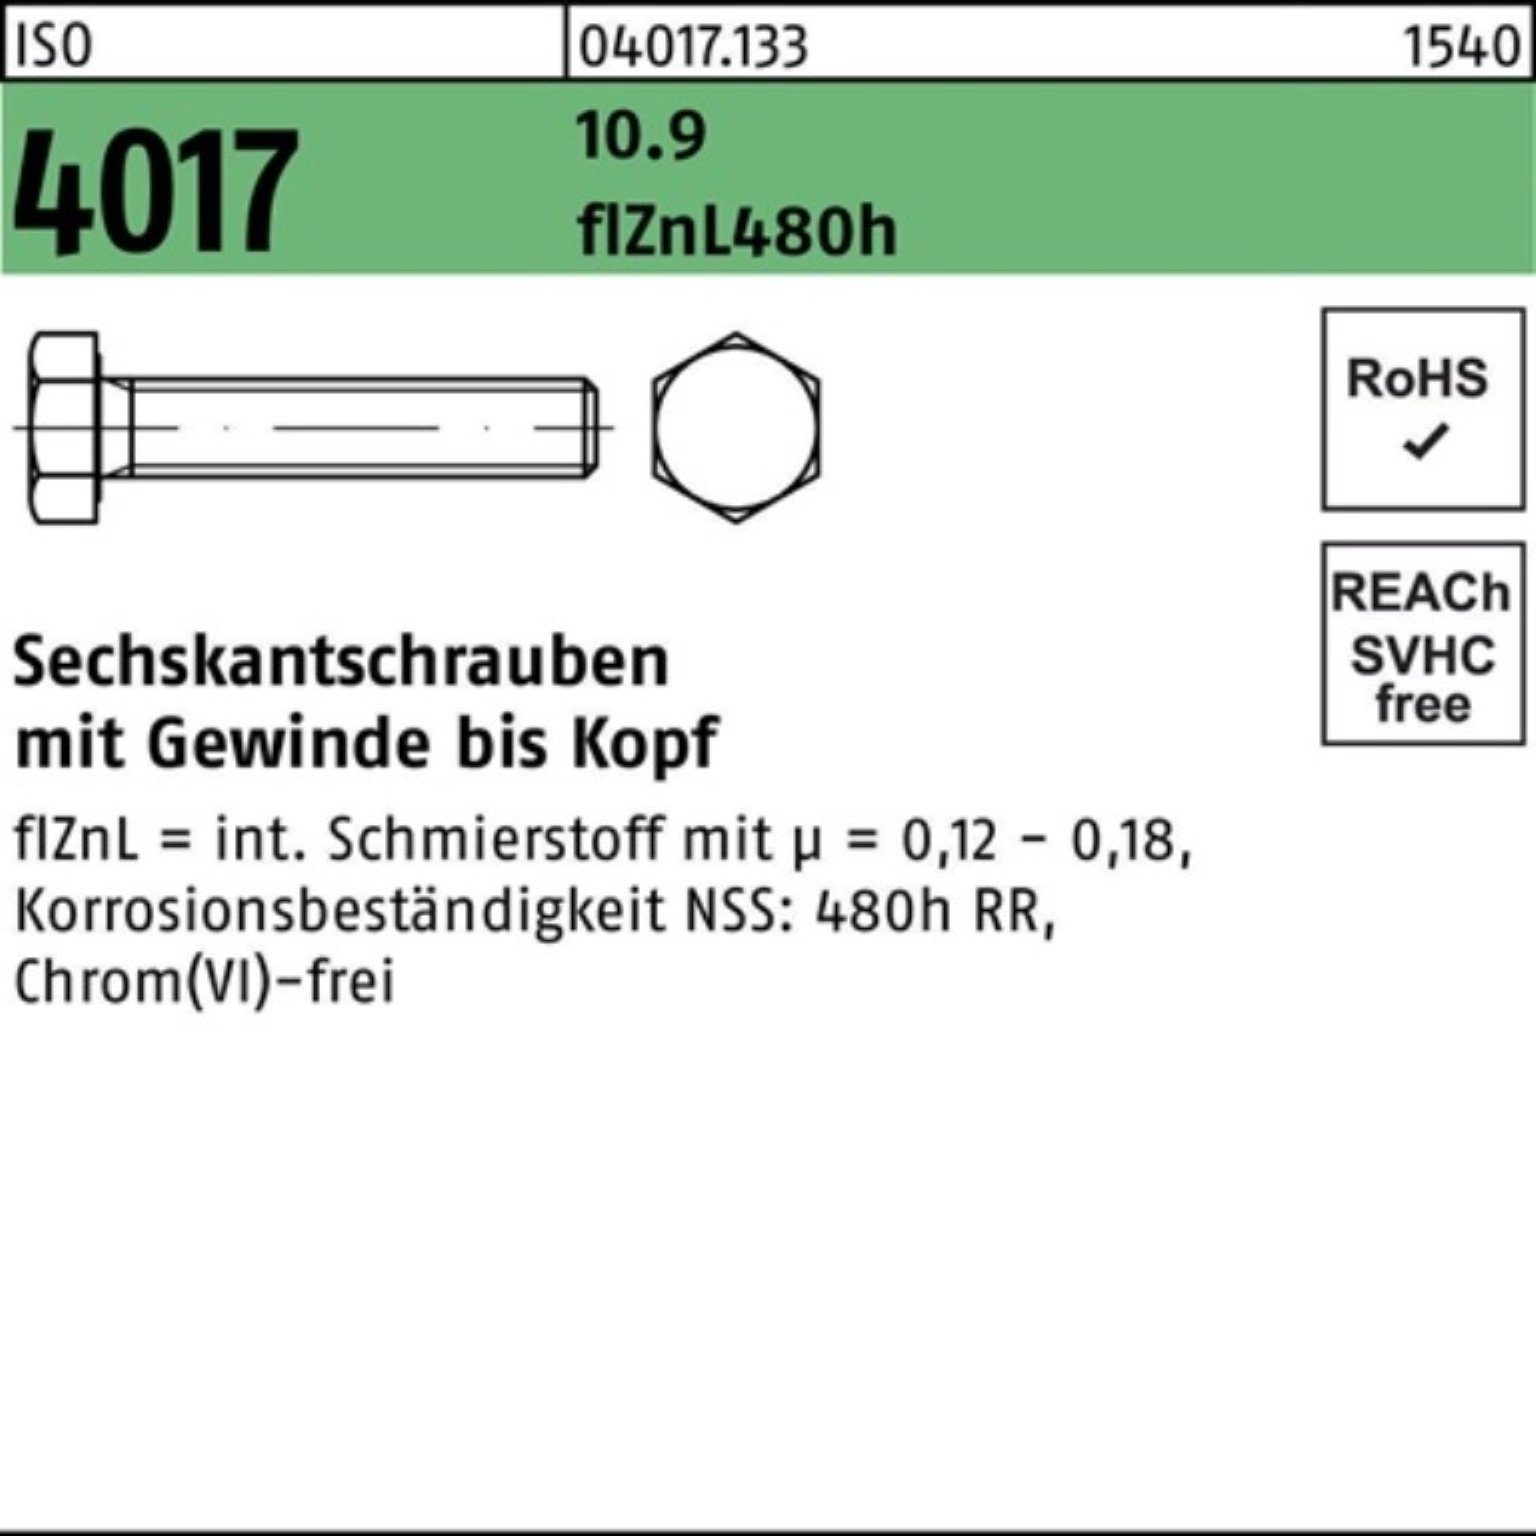 Bufab Sechskantschraube 100er Pack zinklamellenb. ISO Sechskantschraube 2 10.9 VG 55 M20x 4017